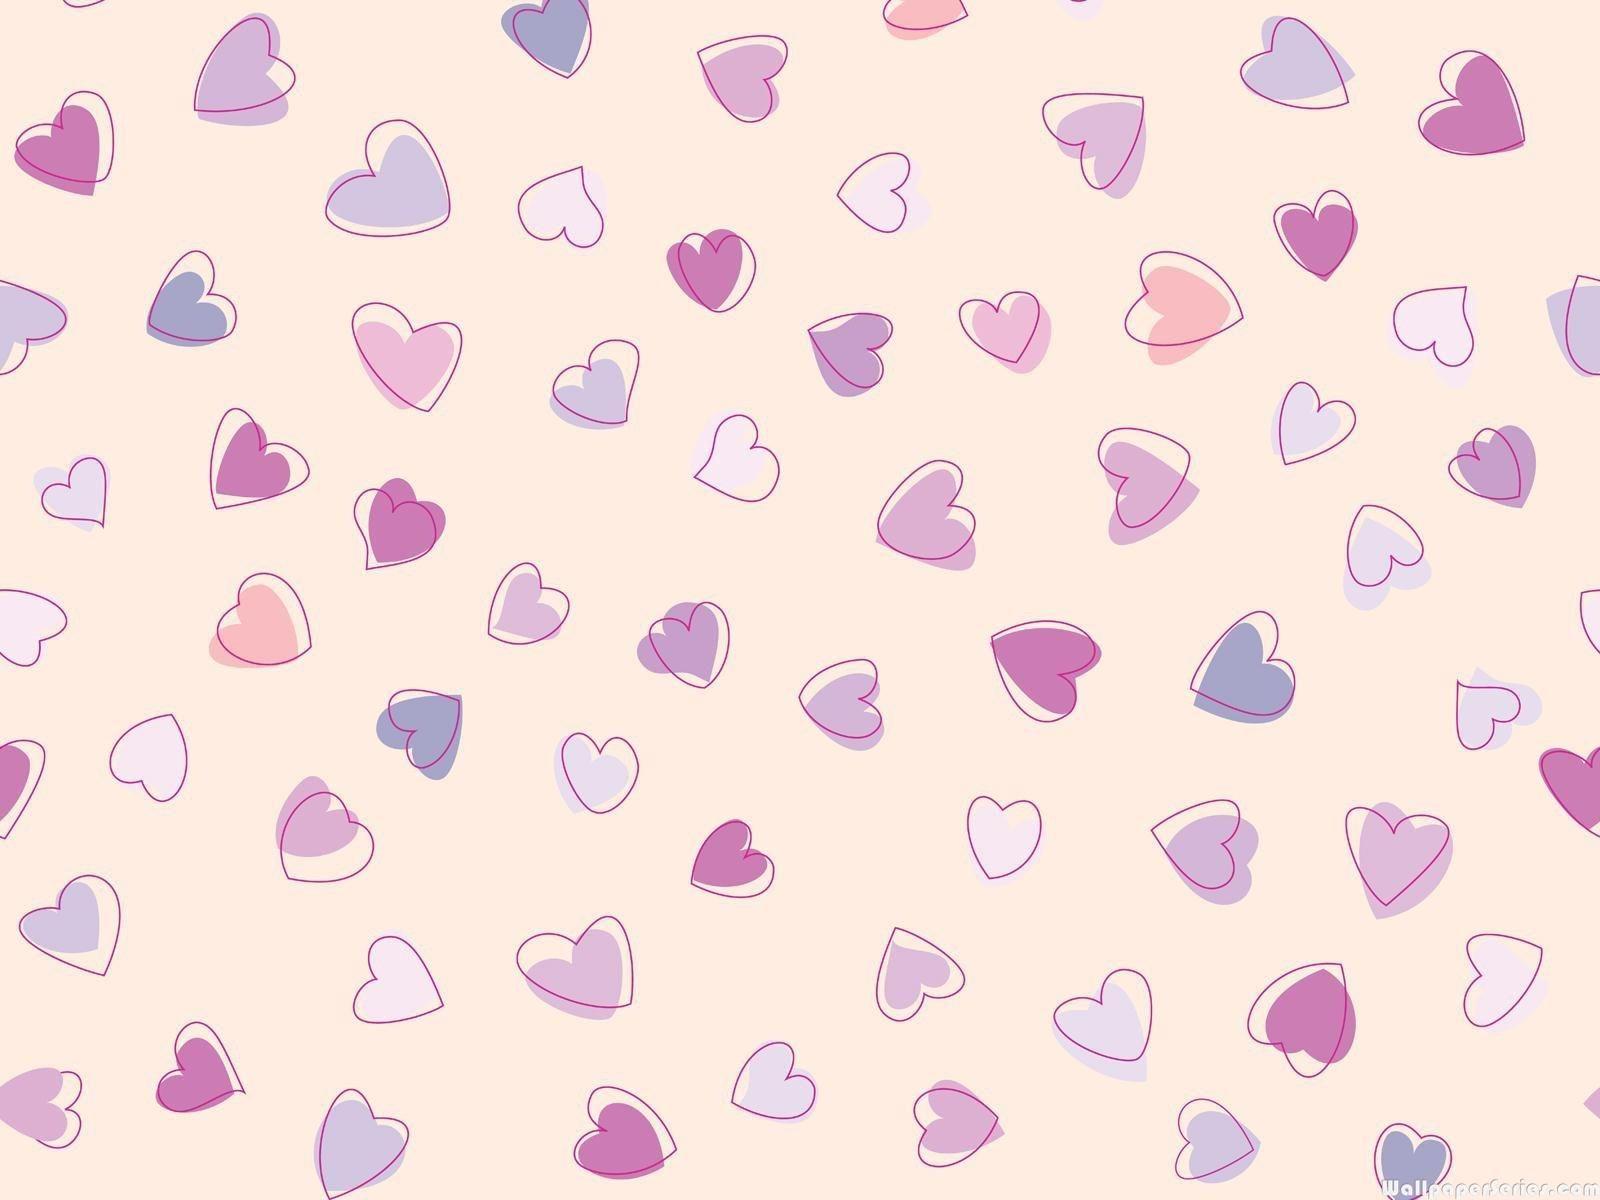 love heart shape wallpaper Images • Mohit Swami (@2510396276) on ShareChat